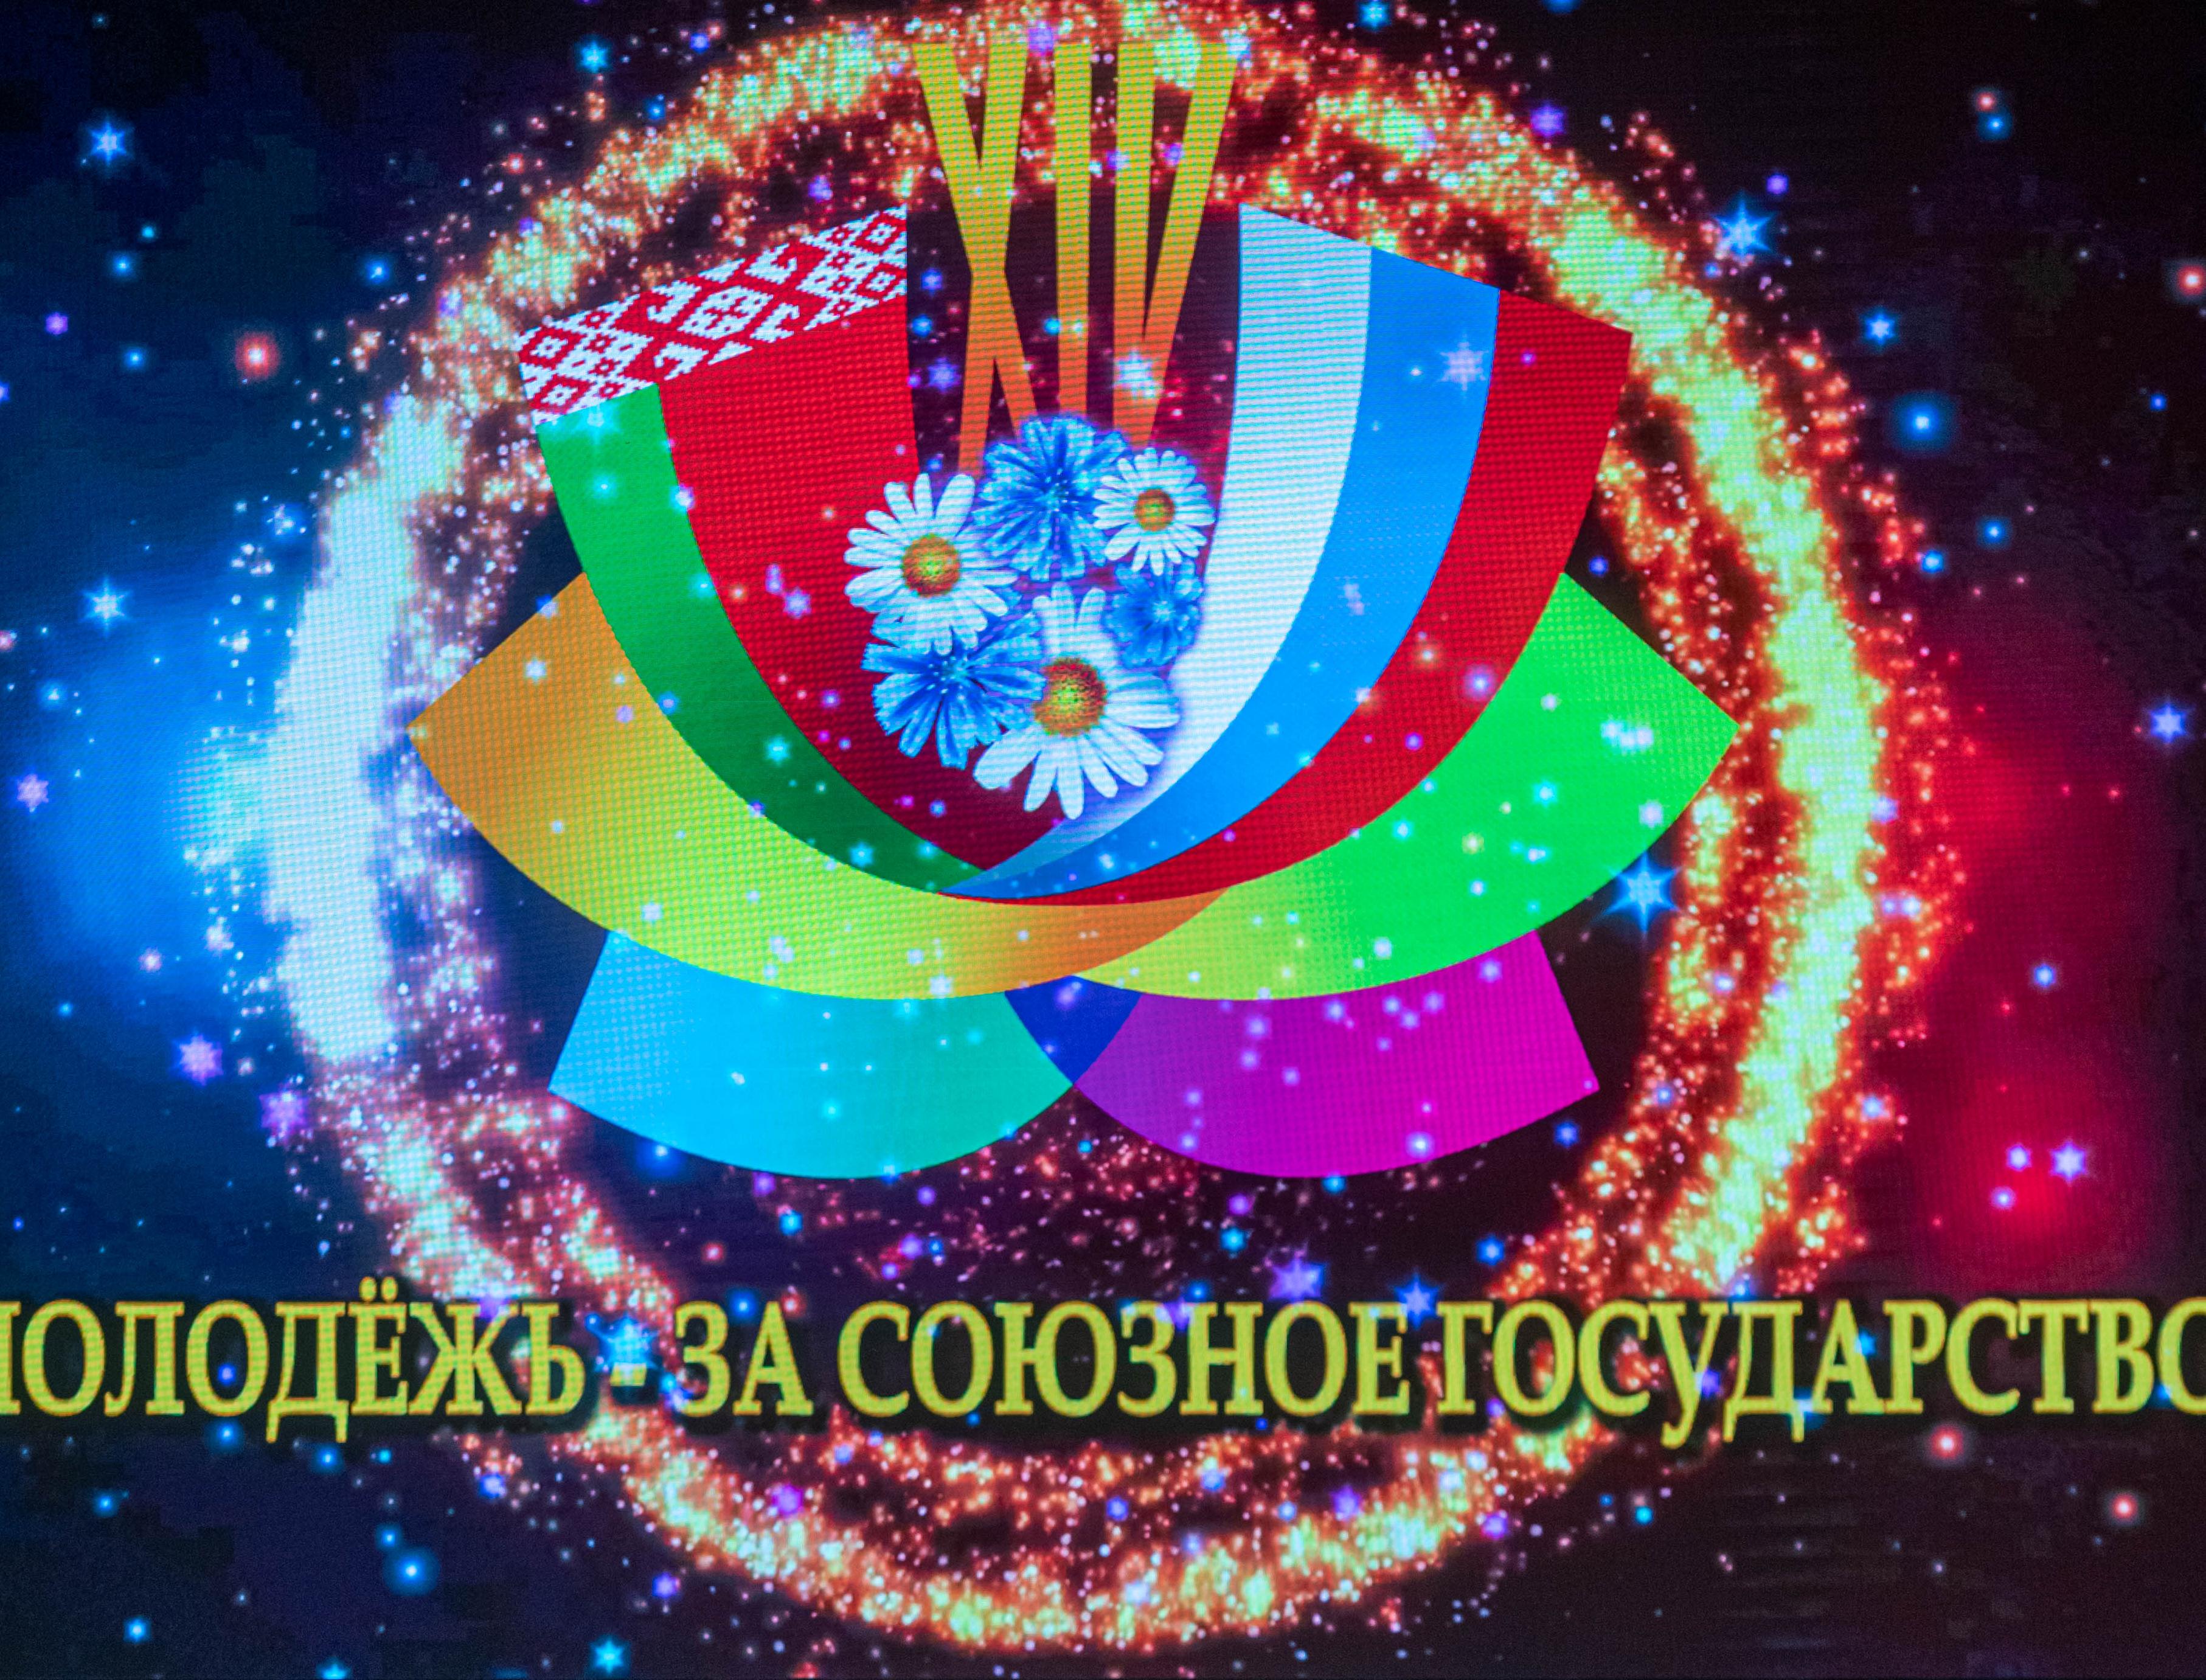  Вячеслав Володин: фестиваль "Молодежь – за Союзное государство" открывает новые имена и таланты, способствует укреплению дружбы